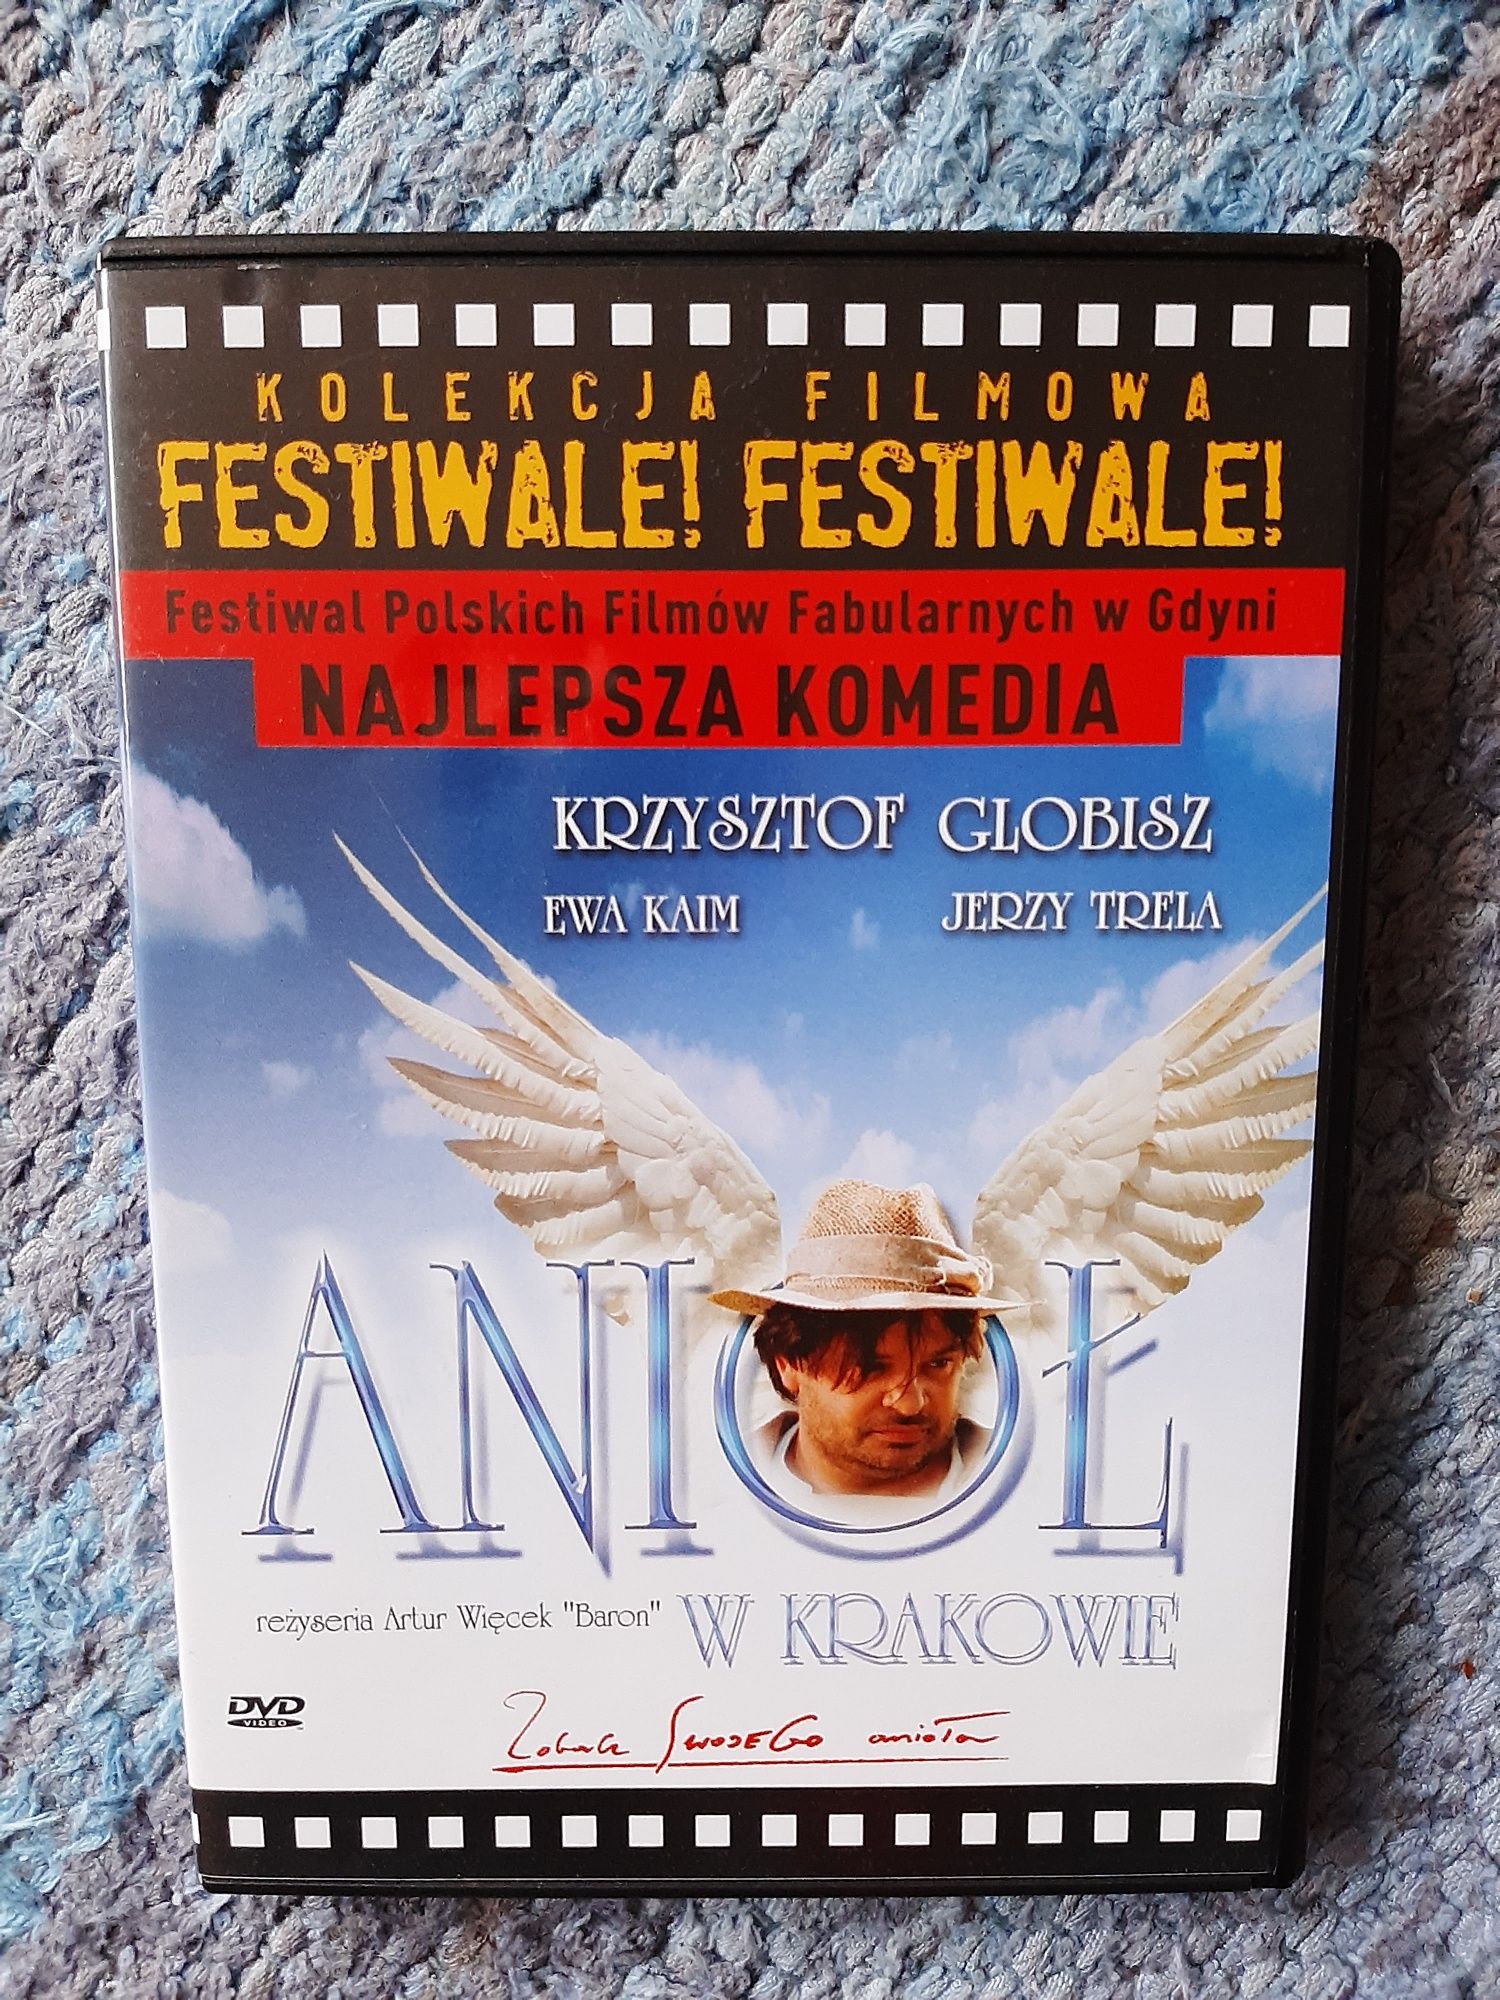 Film DVD "Anioł w Krakowie" Globisz